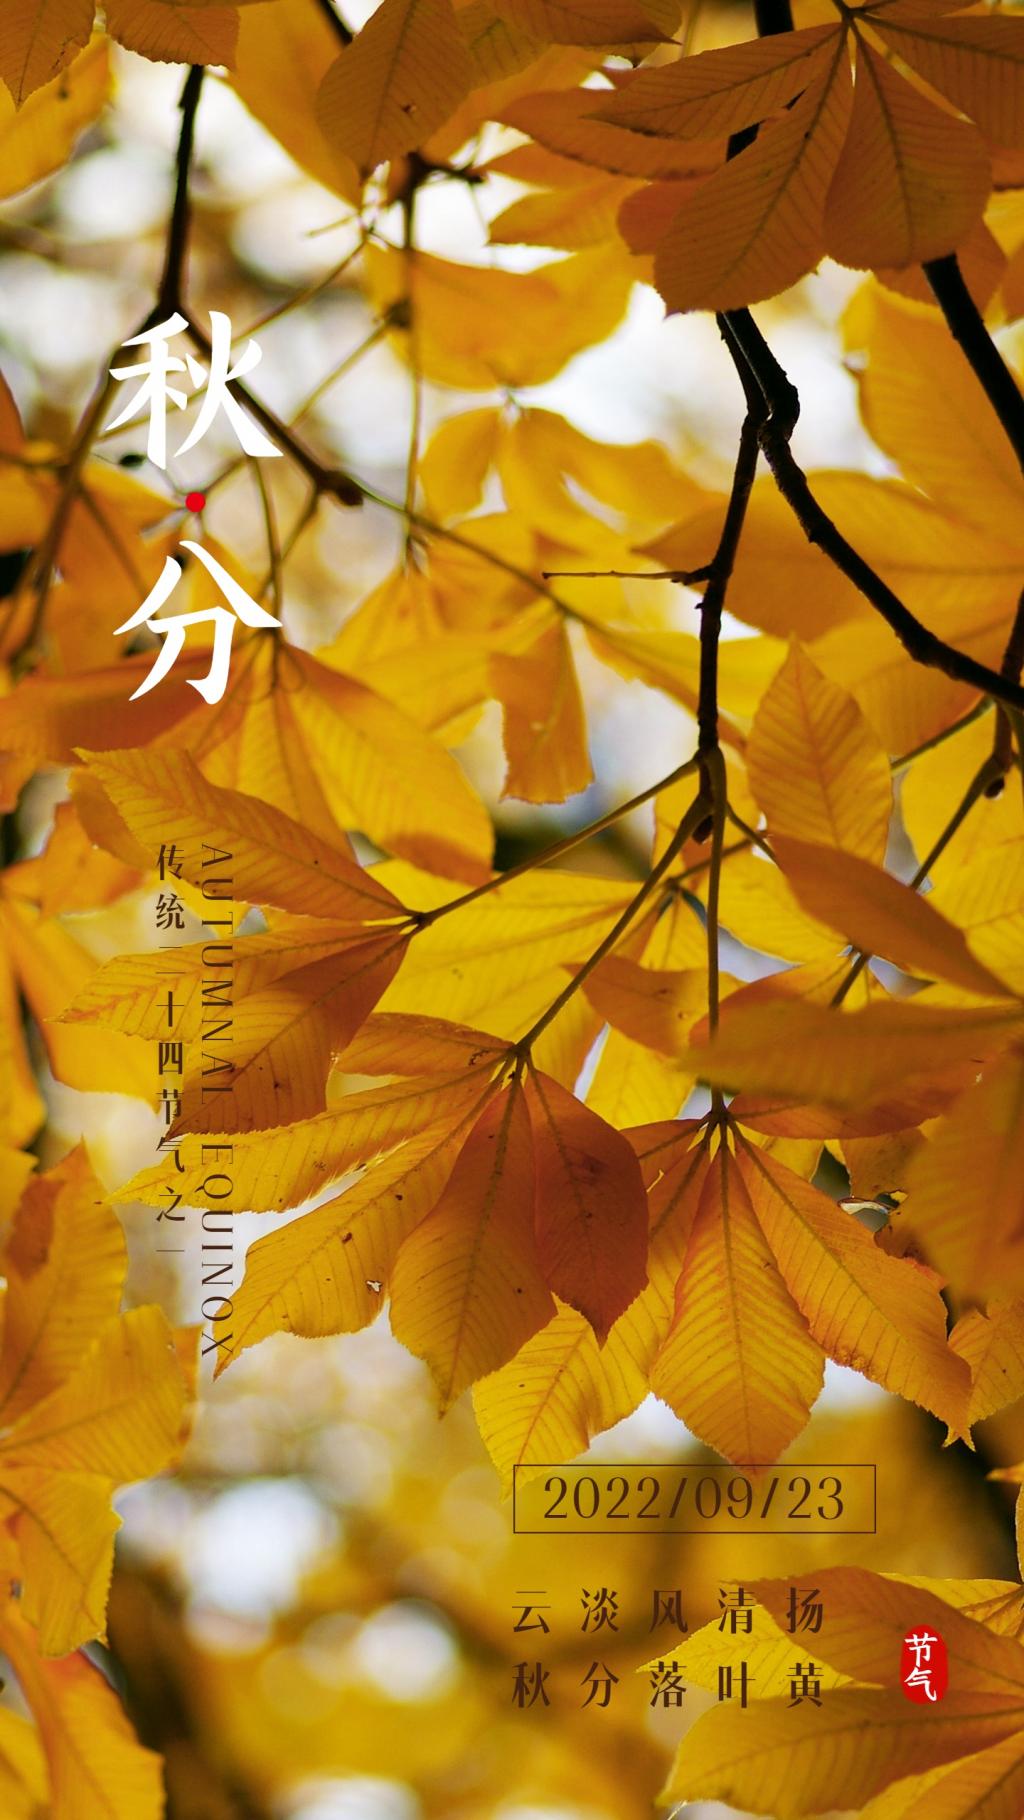 秋分节气祝福金黄树叶手机海报